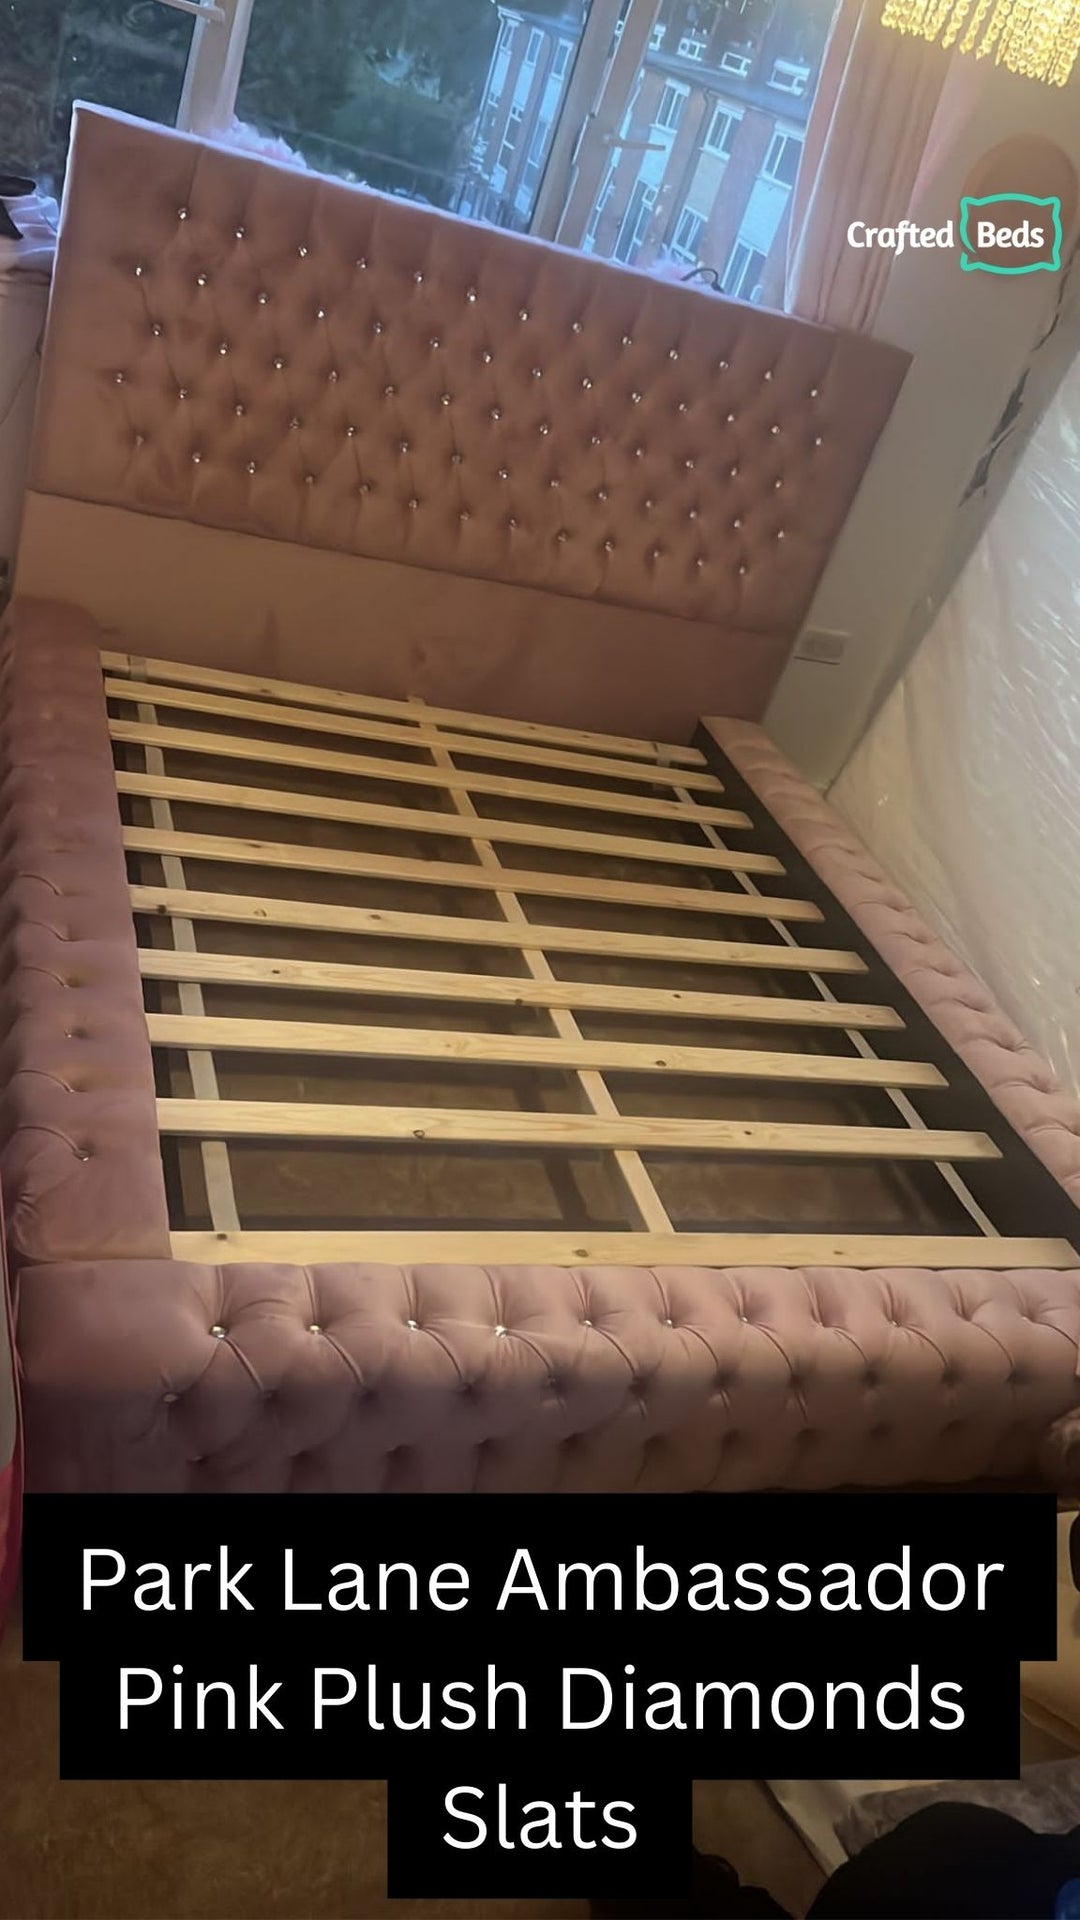 Park Lane Ambassador Luxury  Bed Frame